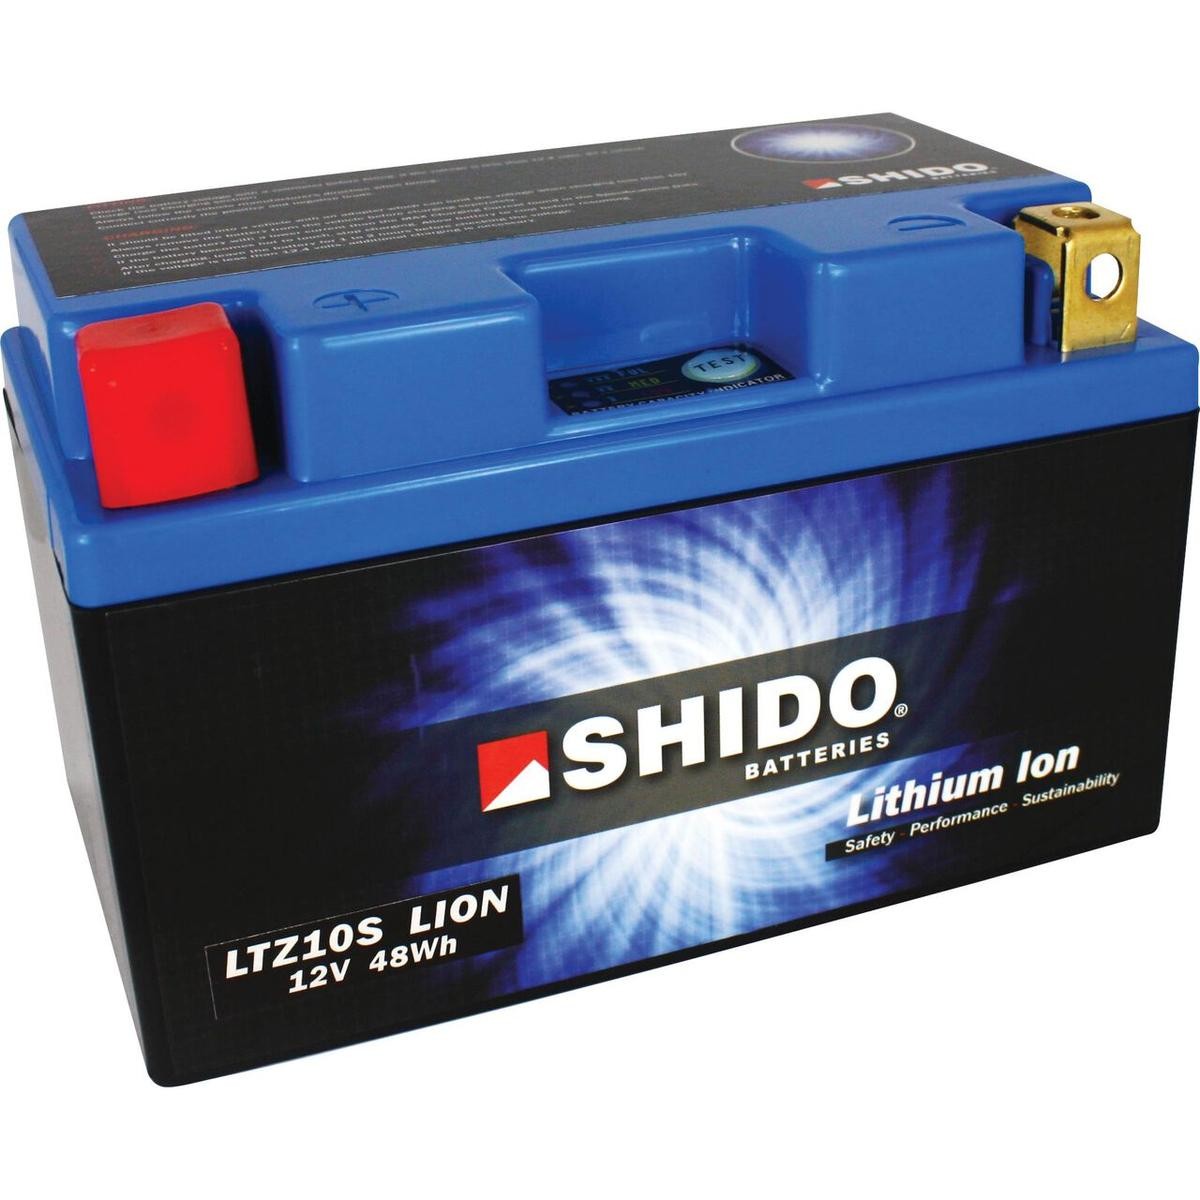 KAWASAKI Z Batterie 12V 4Ah 240A strap mit Ladezustandsanzeige, Kippwinkel bis 180°, Li-Ionen-Batterie, Lithium-Ferrum-Batterie (LiFePO4), Pluspol links Shido LTZ10SLION-S-